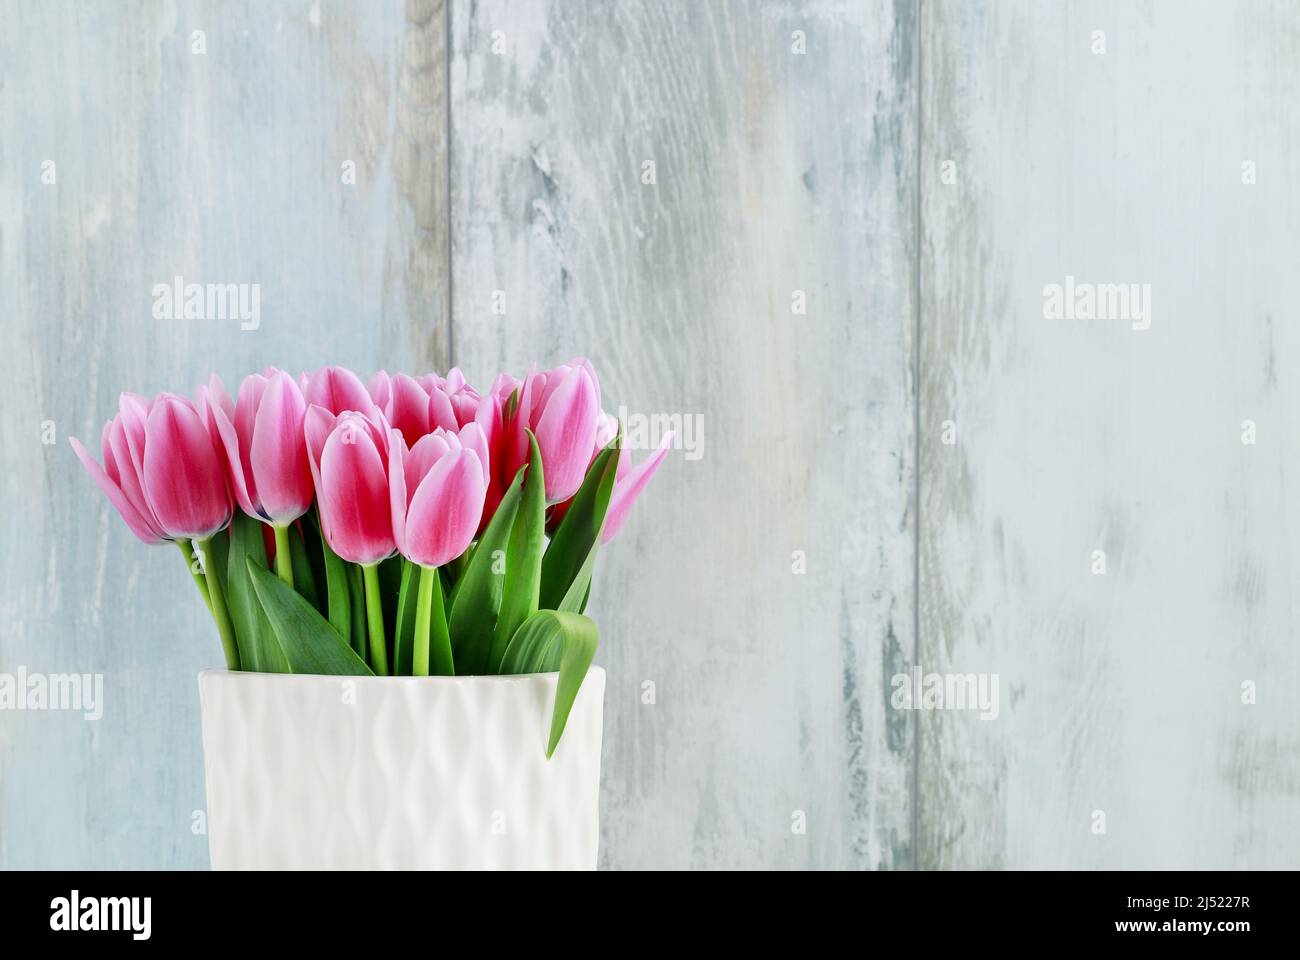 Tulipes roses en vase blanc en céramique, fond de mur en bois. Décoration de fête Banque D'Images